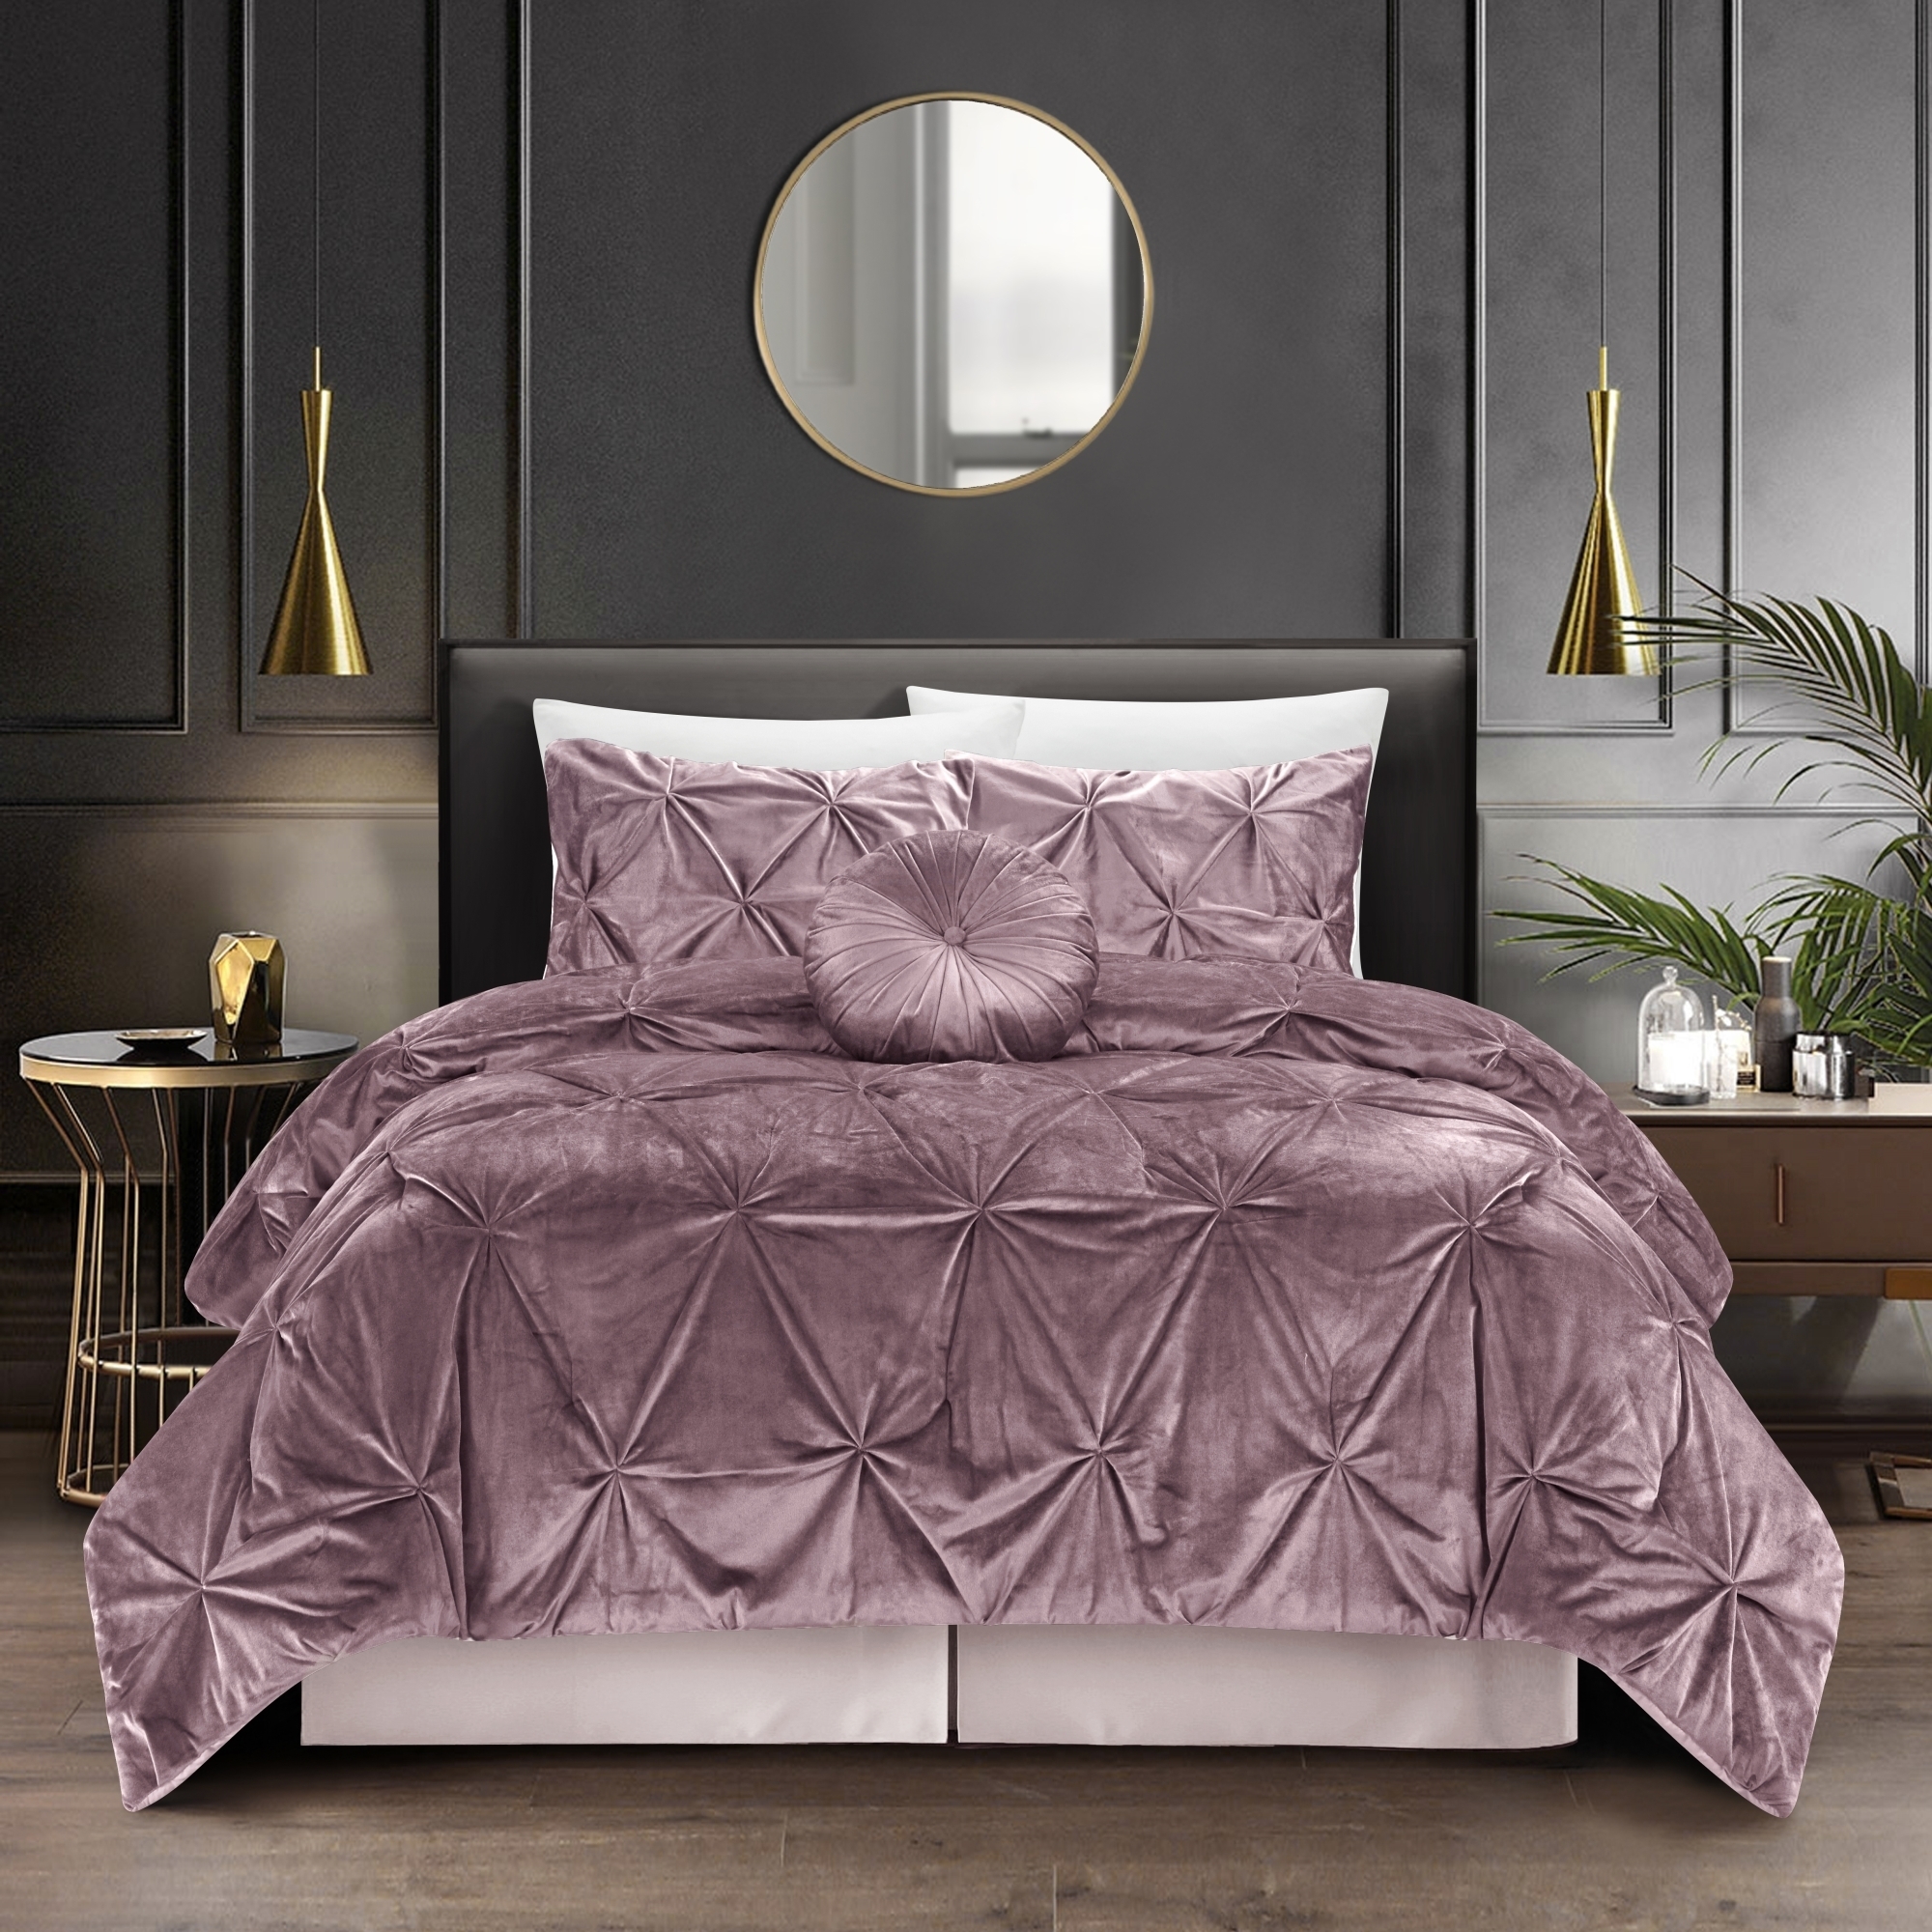 Nilah 5Pc Comforter Set -Shiny Velvet , Pinch Pleated Pintuck - Blush, Full/queen